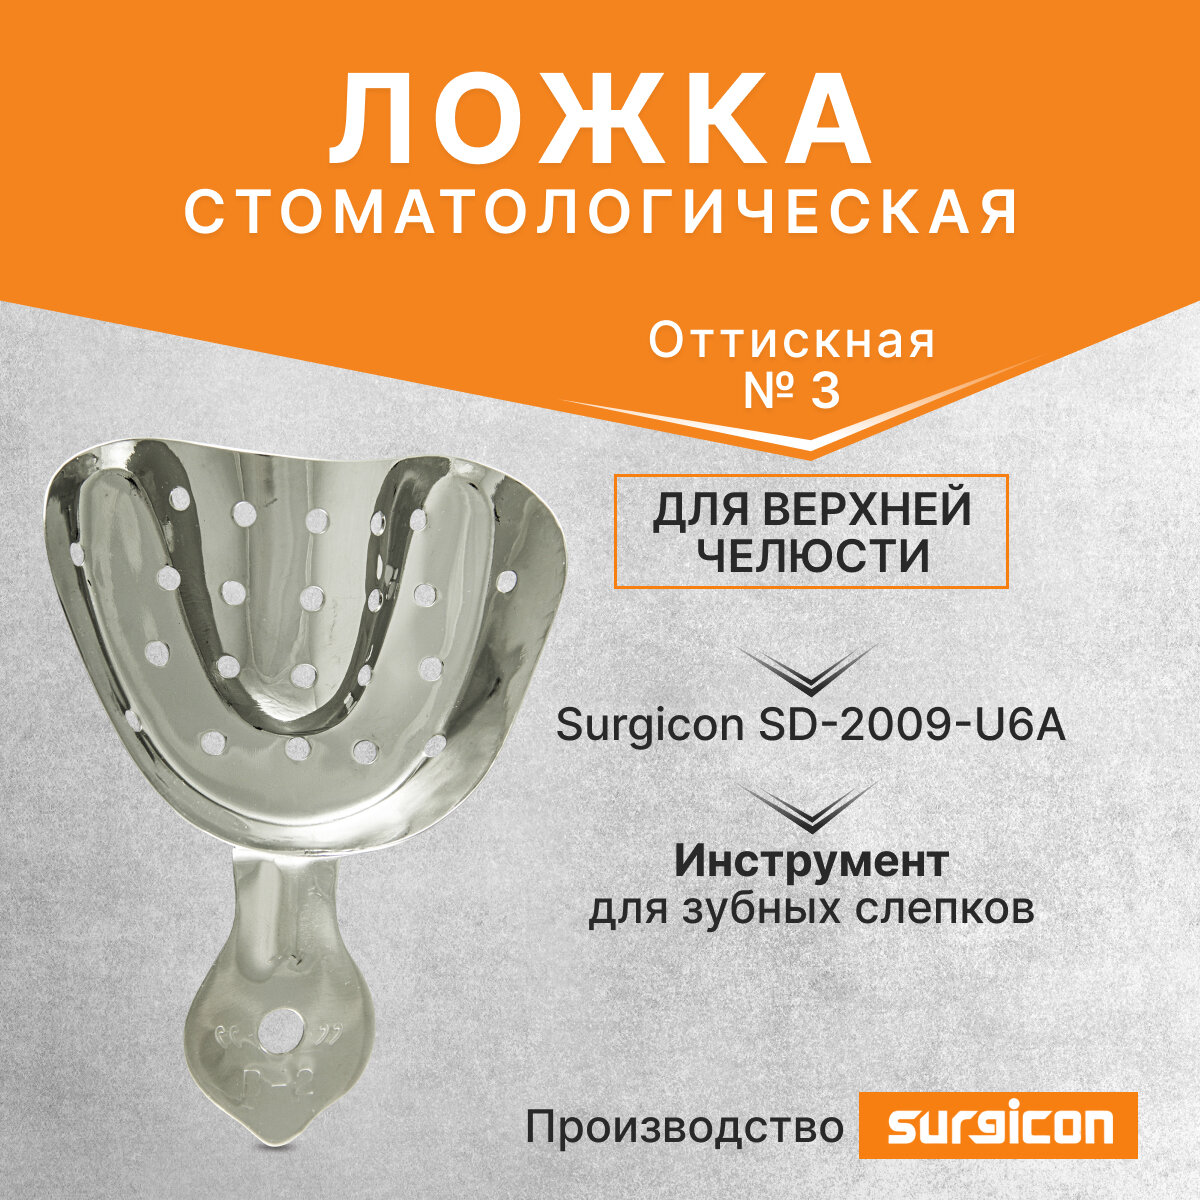 Ложка оттискная стоматологическая для верхней челюсти №3 Surgicon SD-2009-U6A